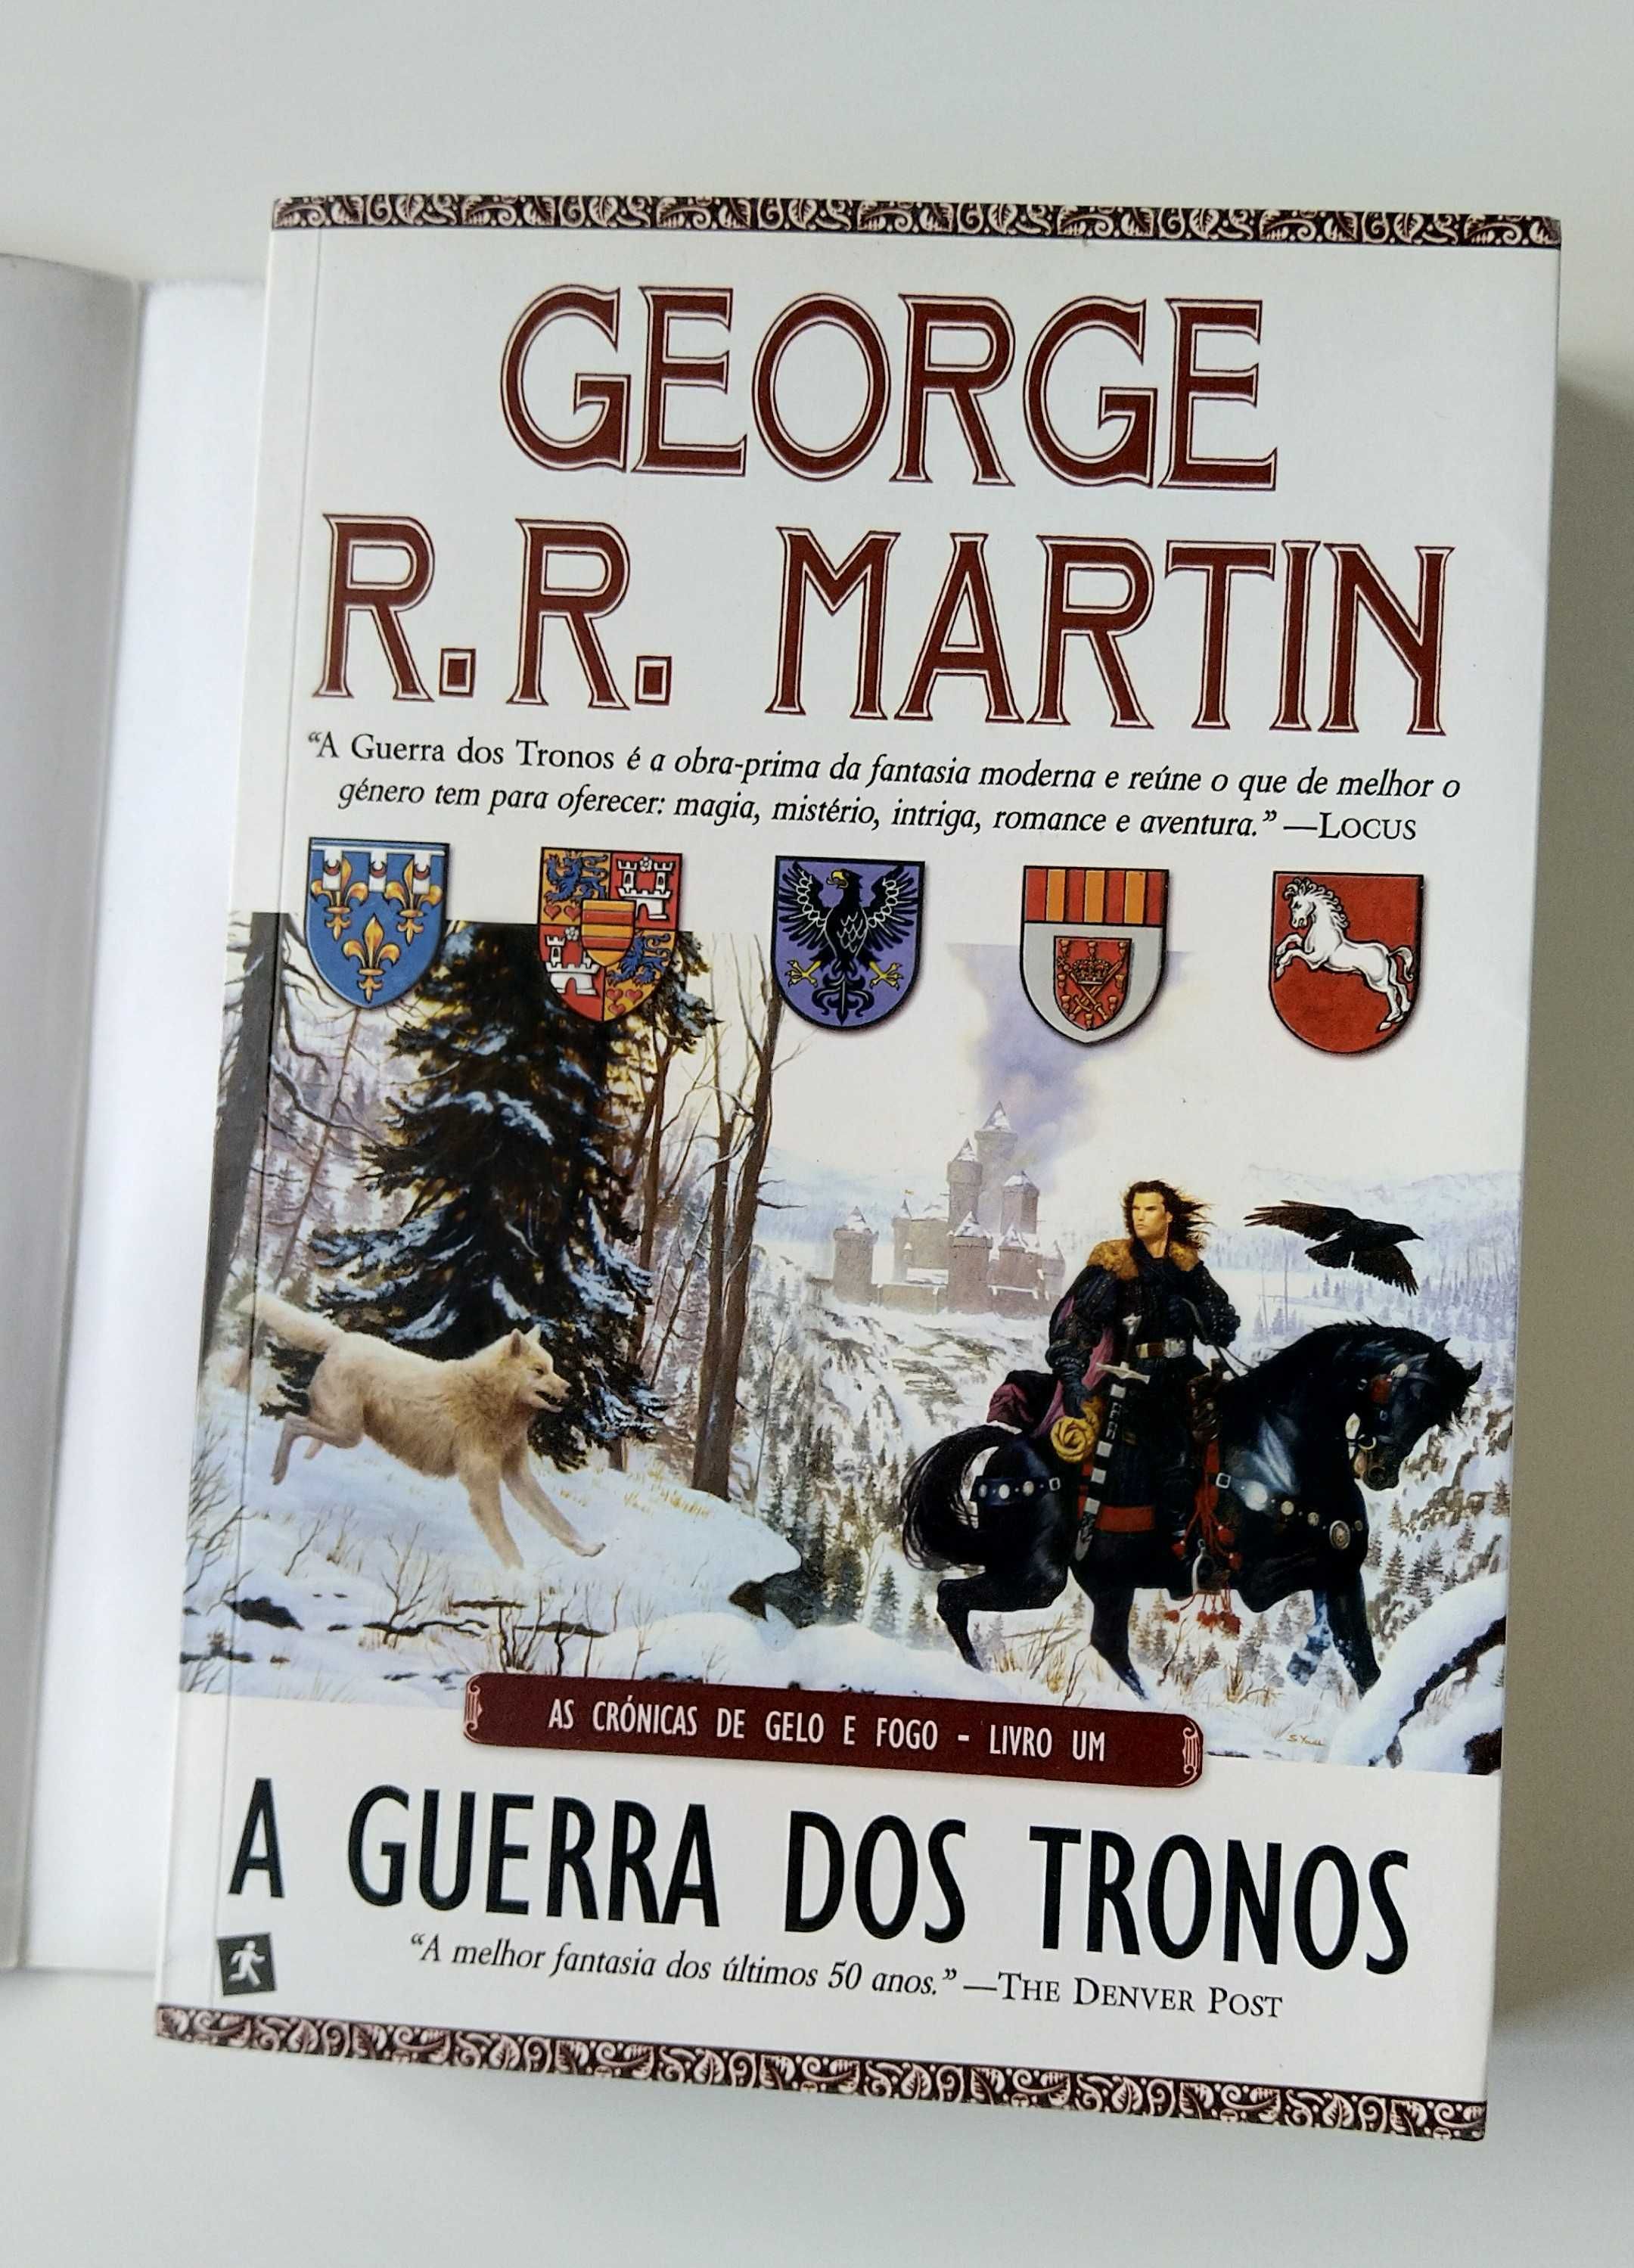 A Guerra dos Tronos: As Crónicas de Gelo e Fogo - livro 1